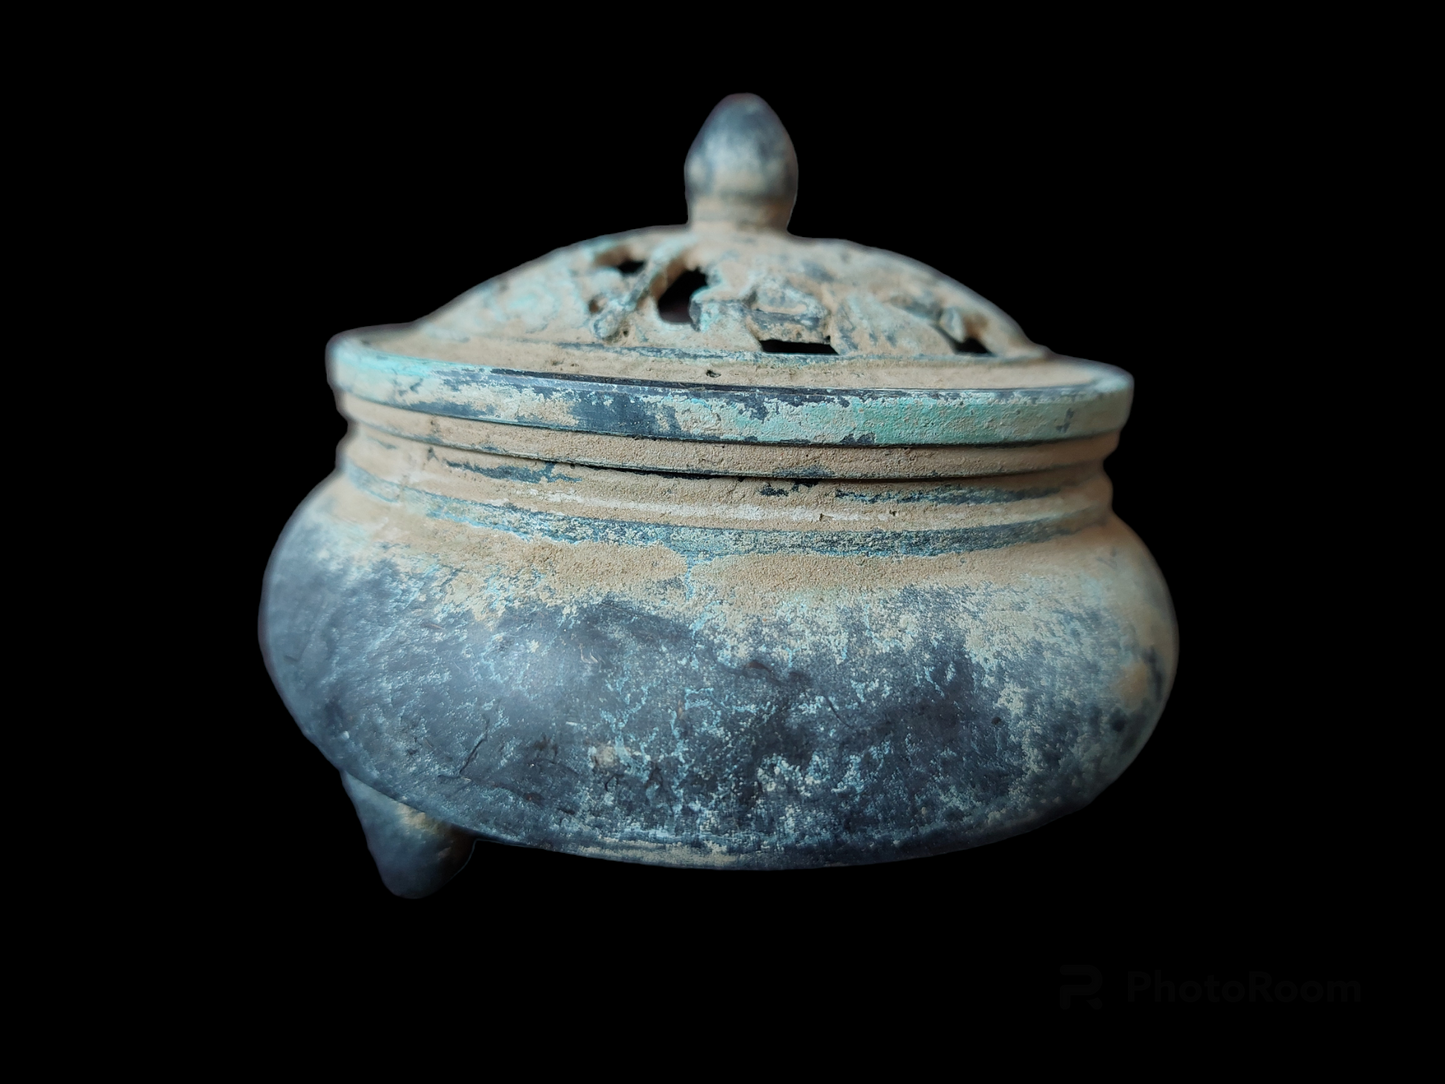 Antique bronze incense burner with lid